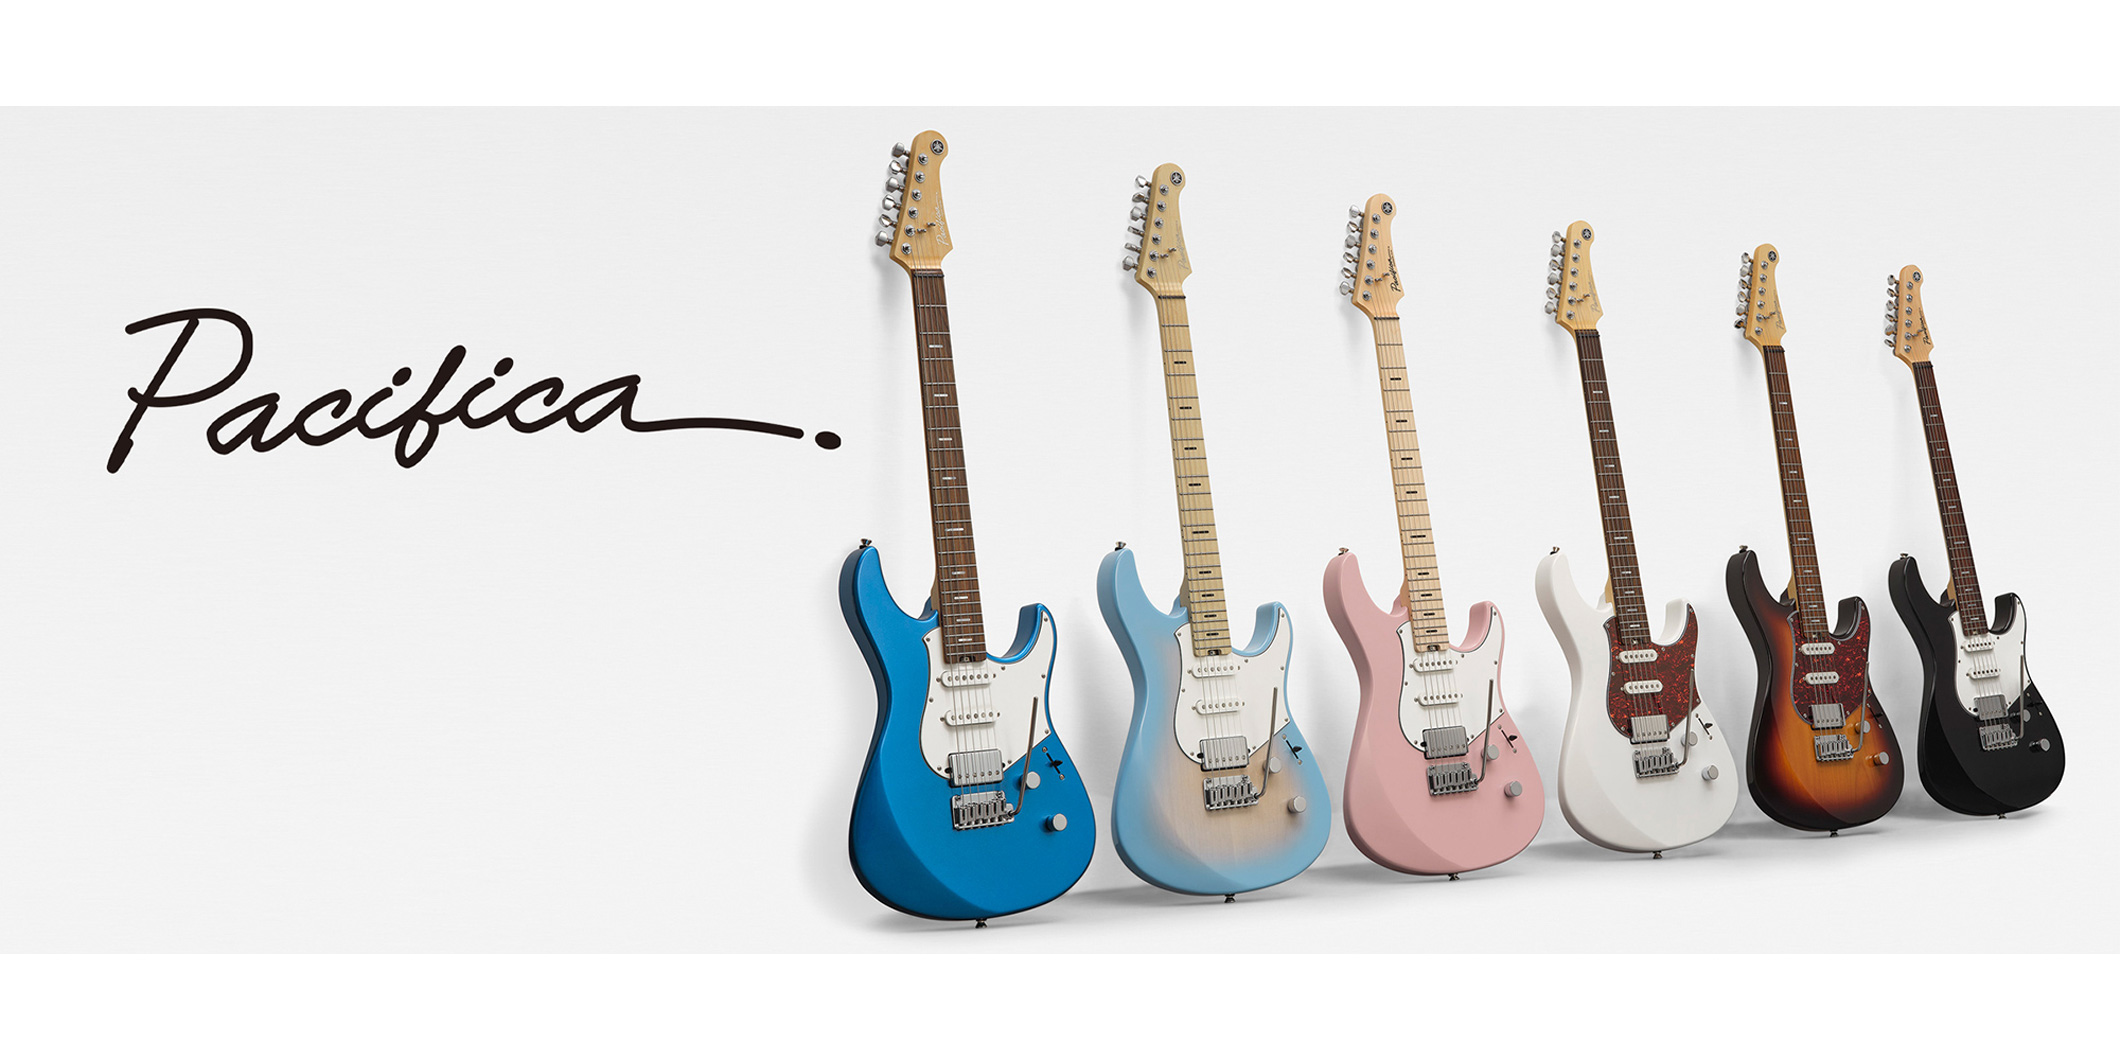 ヤマハ、Pacificaシリーズを進化させたエレキ・ギター2モデルを2月に発売